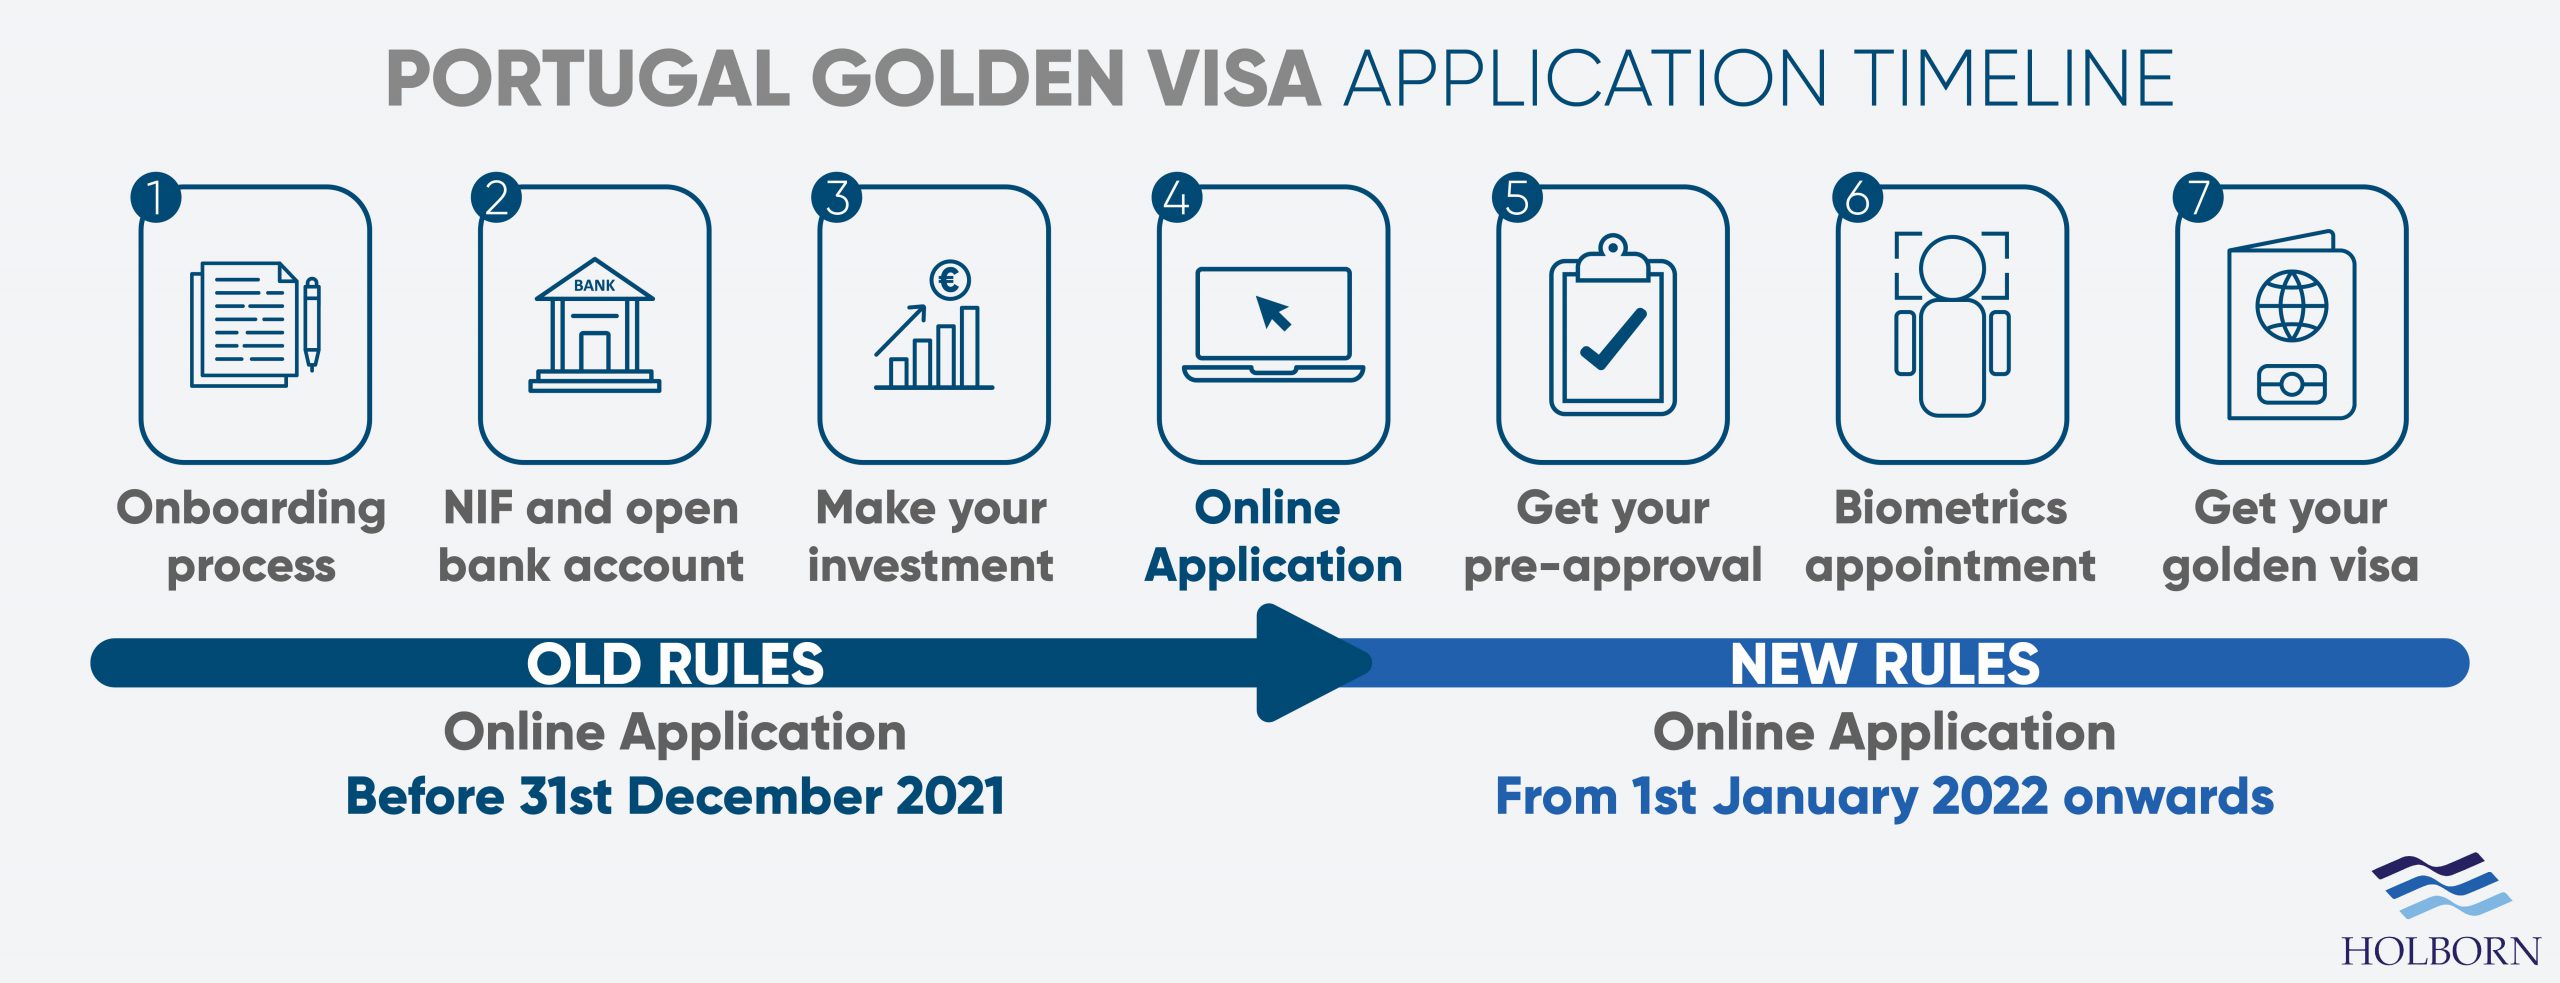 Portugal Golden Visa application timeline